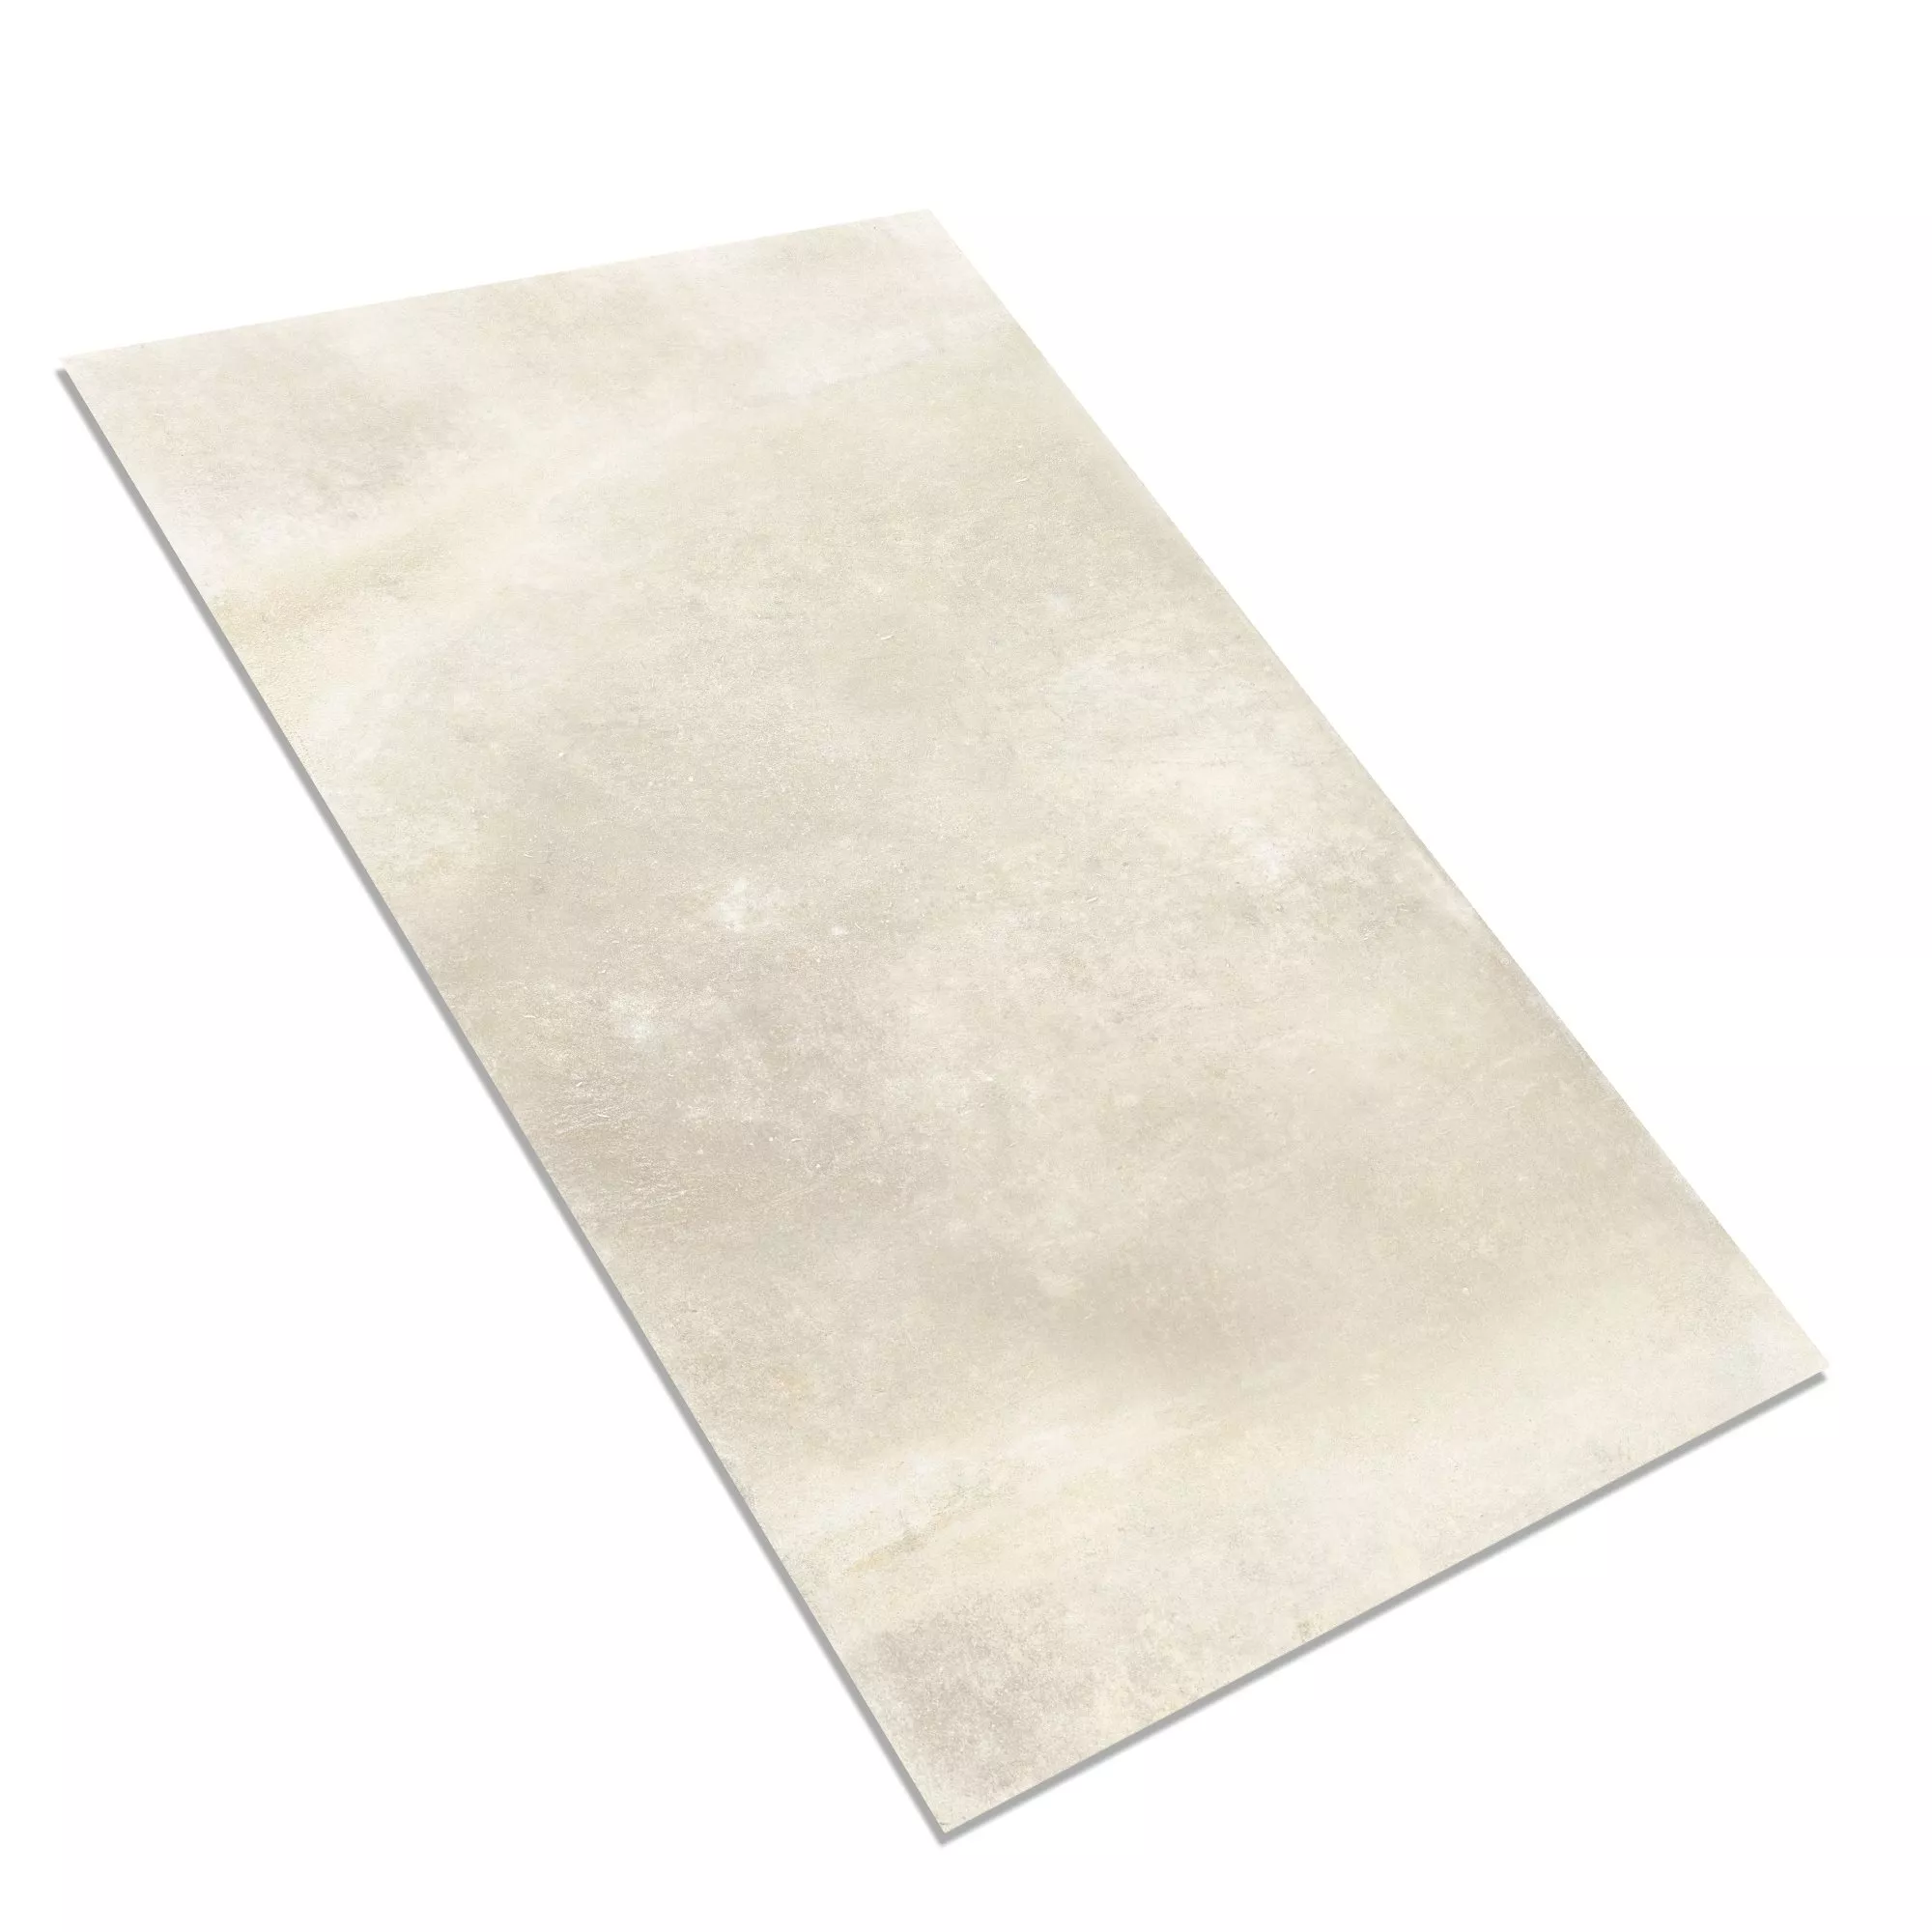 Sample Floor Tiles Cement Optic Maryland Beige 30x60cm